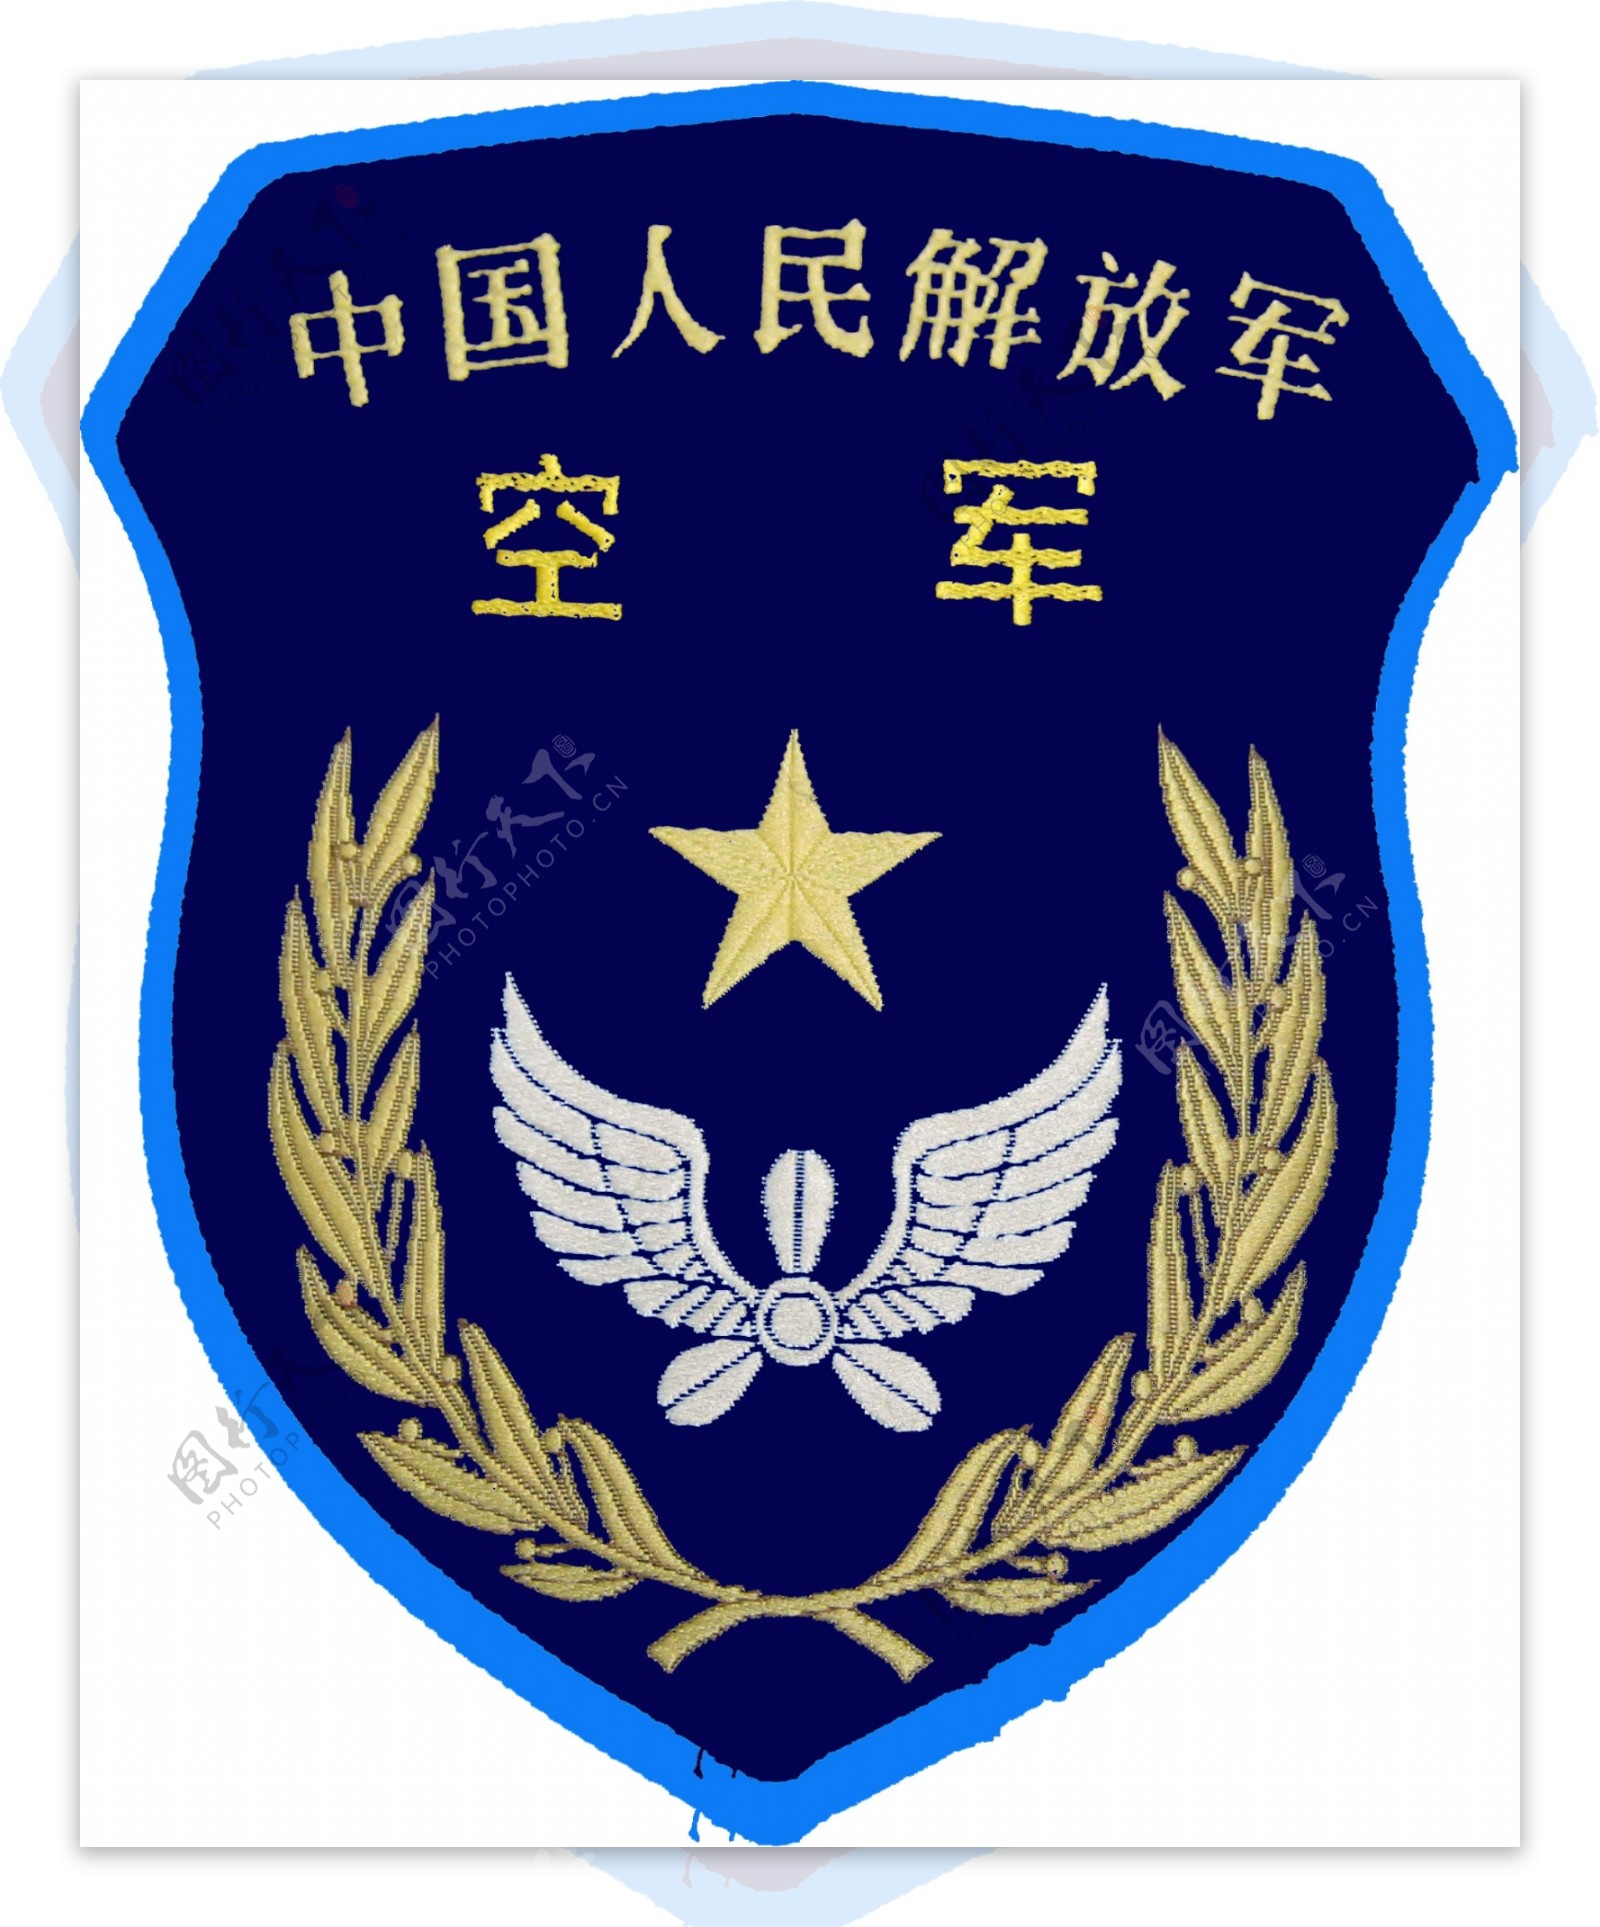 空军臂章图片